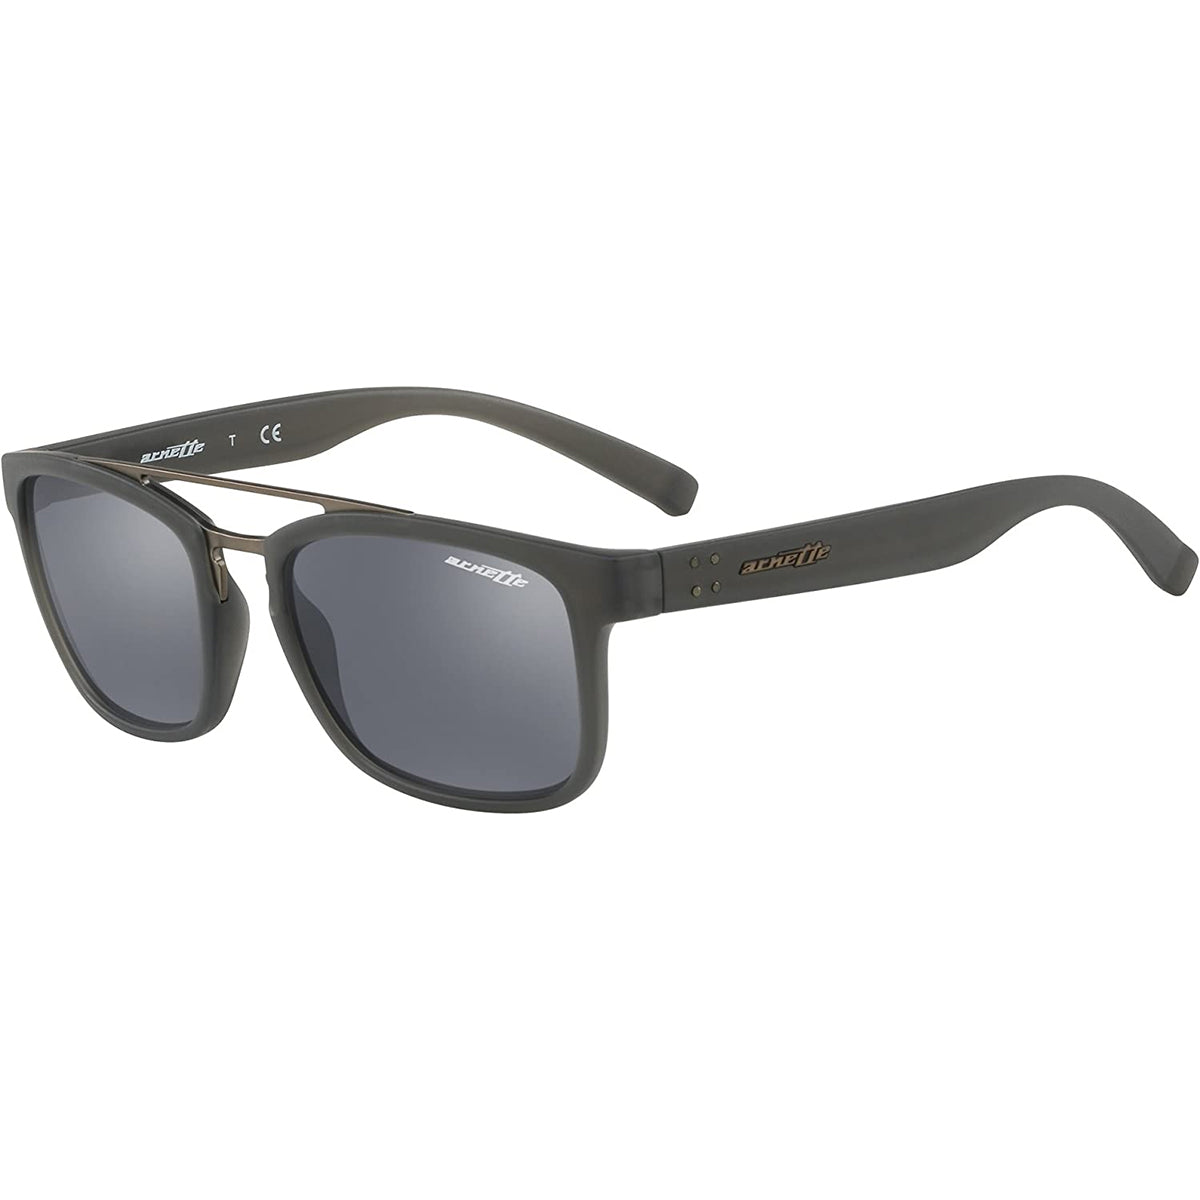 Arnette Men's White Rectangular Sunglasses AN4280 27466P 63 888392550880 -  Sunglasses - Jomashop